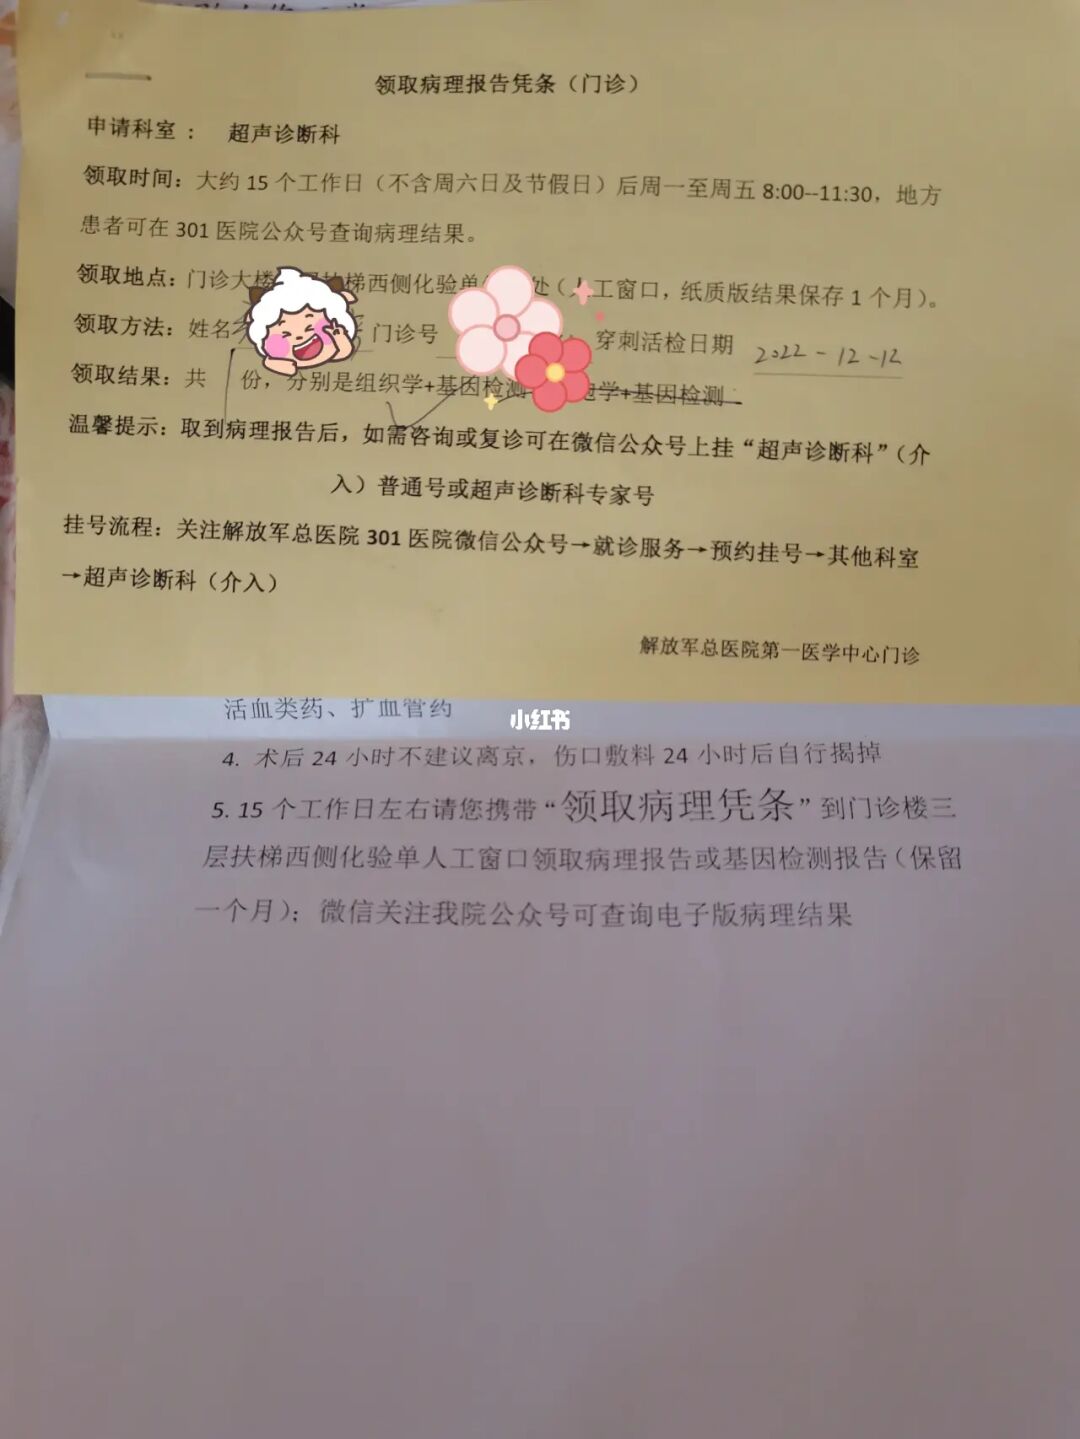 关于北京市第六医院黄牛专业挂号帮您解决所有疑虑的信息